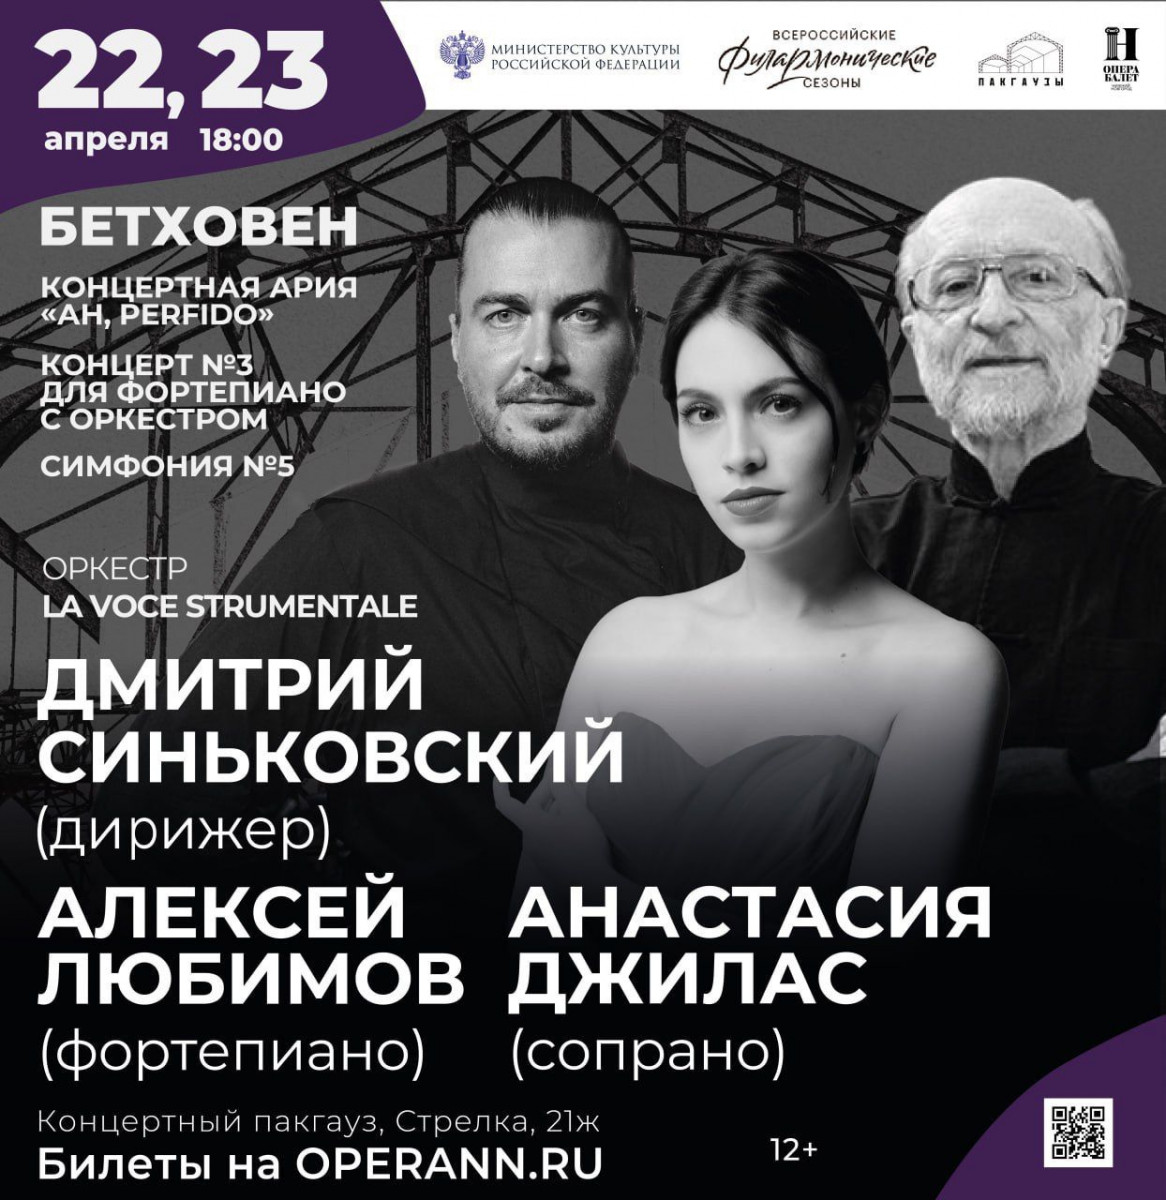 Концерт музыки Бетховена под управлением Синьковского состоится в Пакгаузах на Стрелке